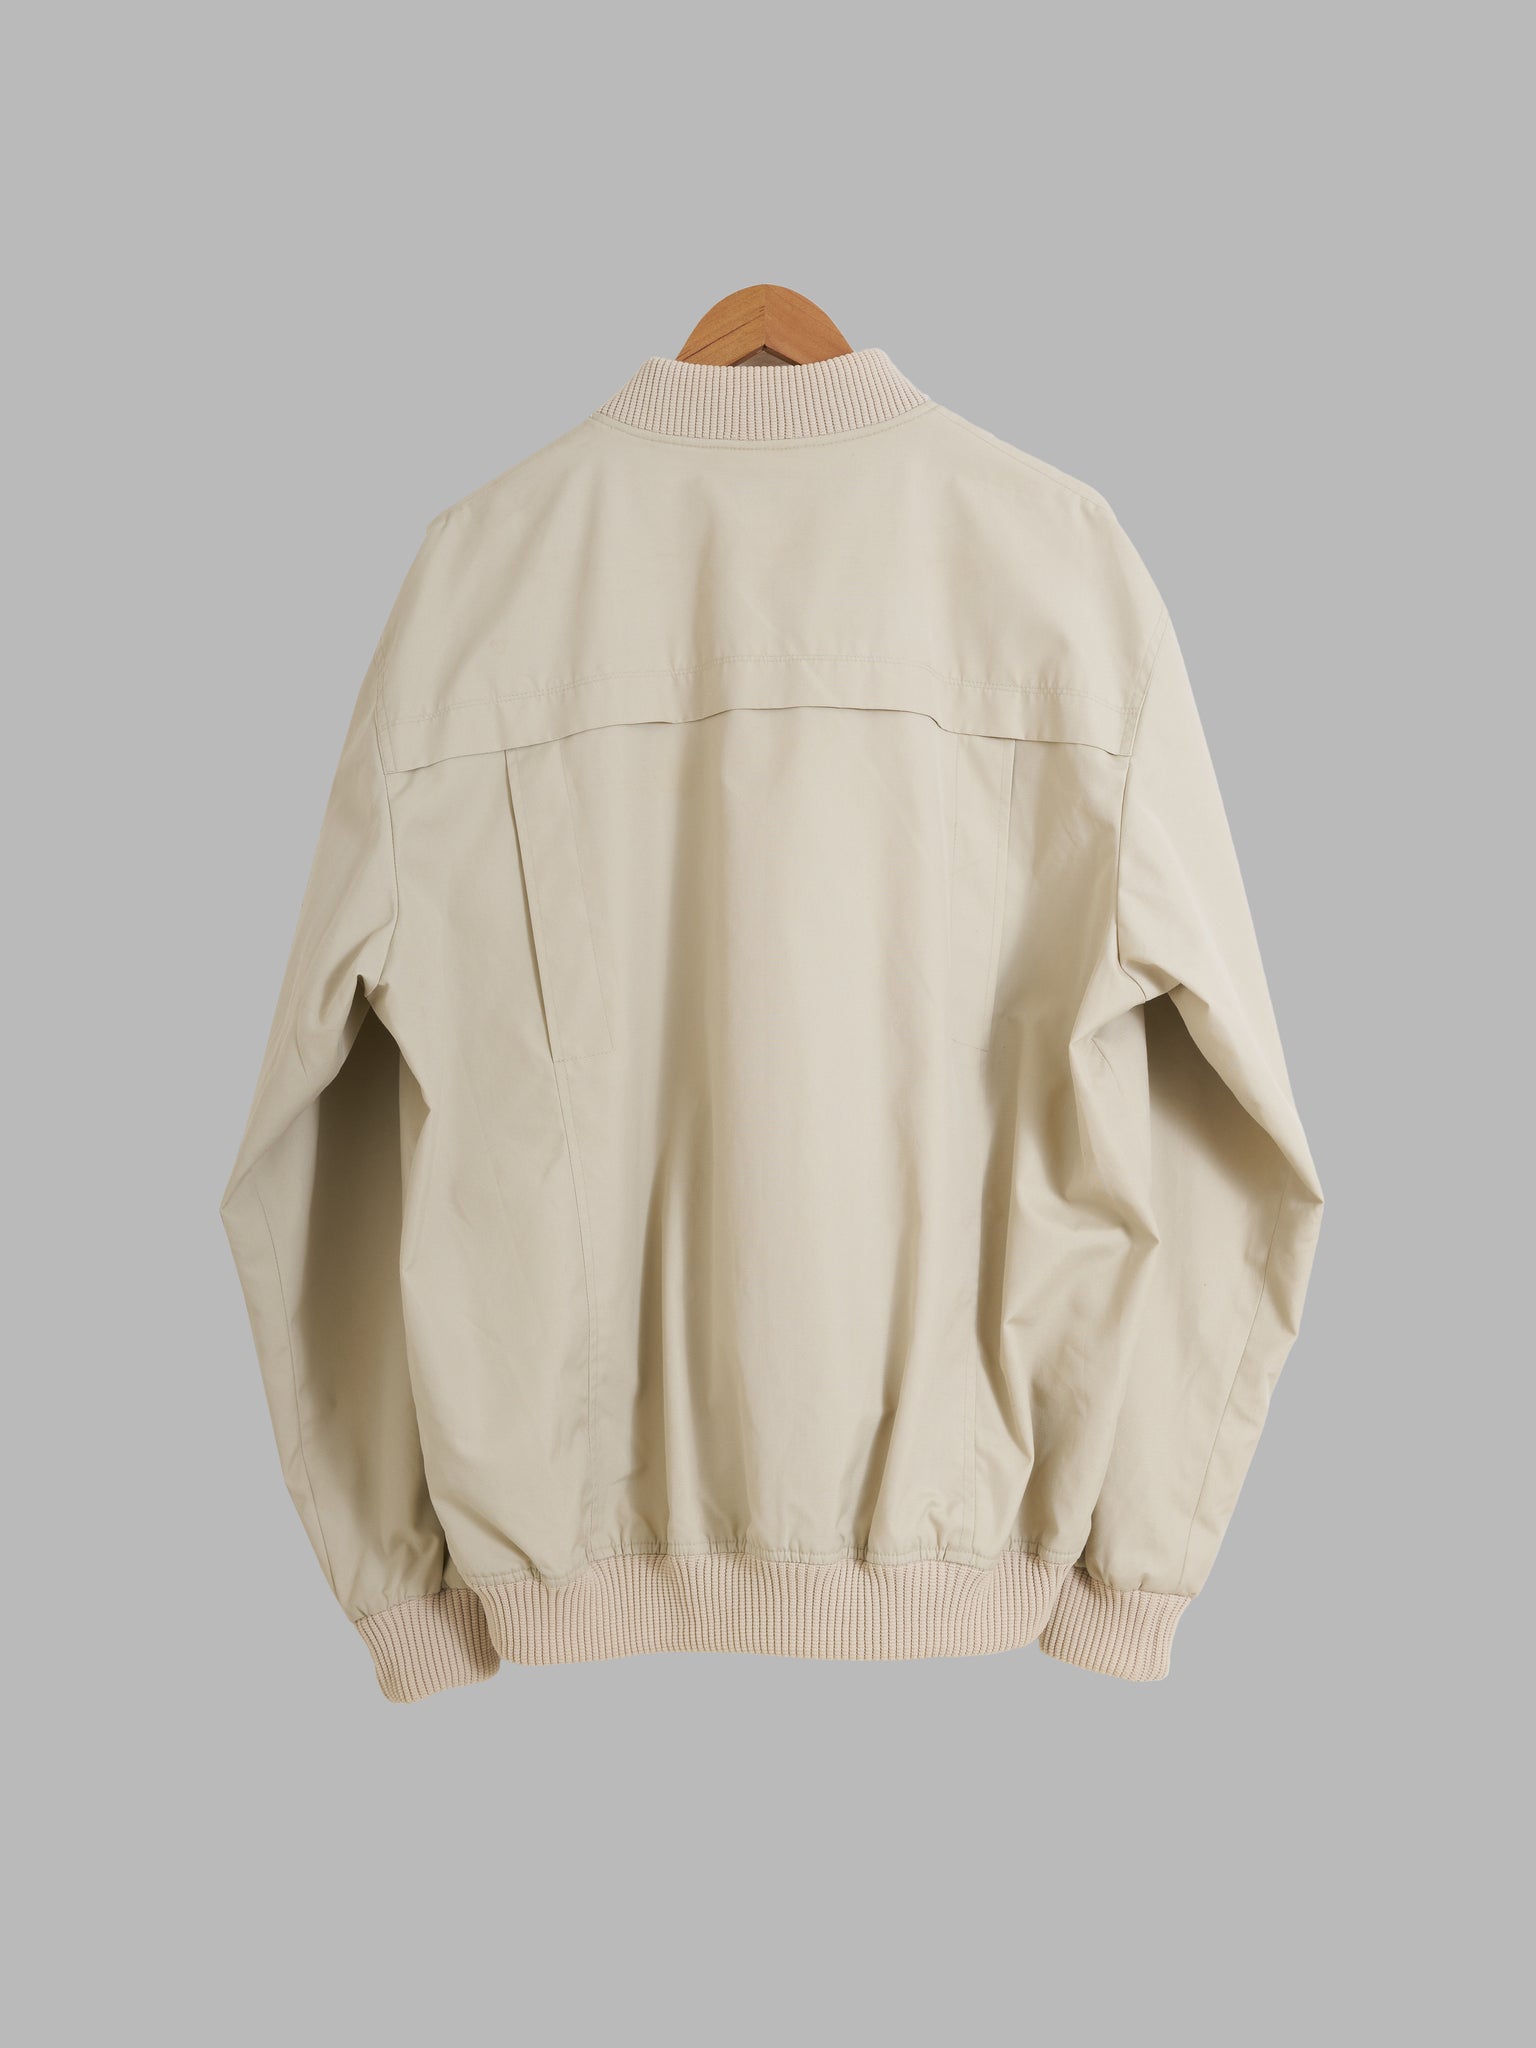 Vintage Spicer Sportswear of Melbourne 1980s beige panelled bomber jacket M L XL